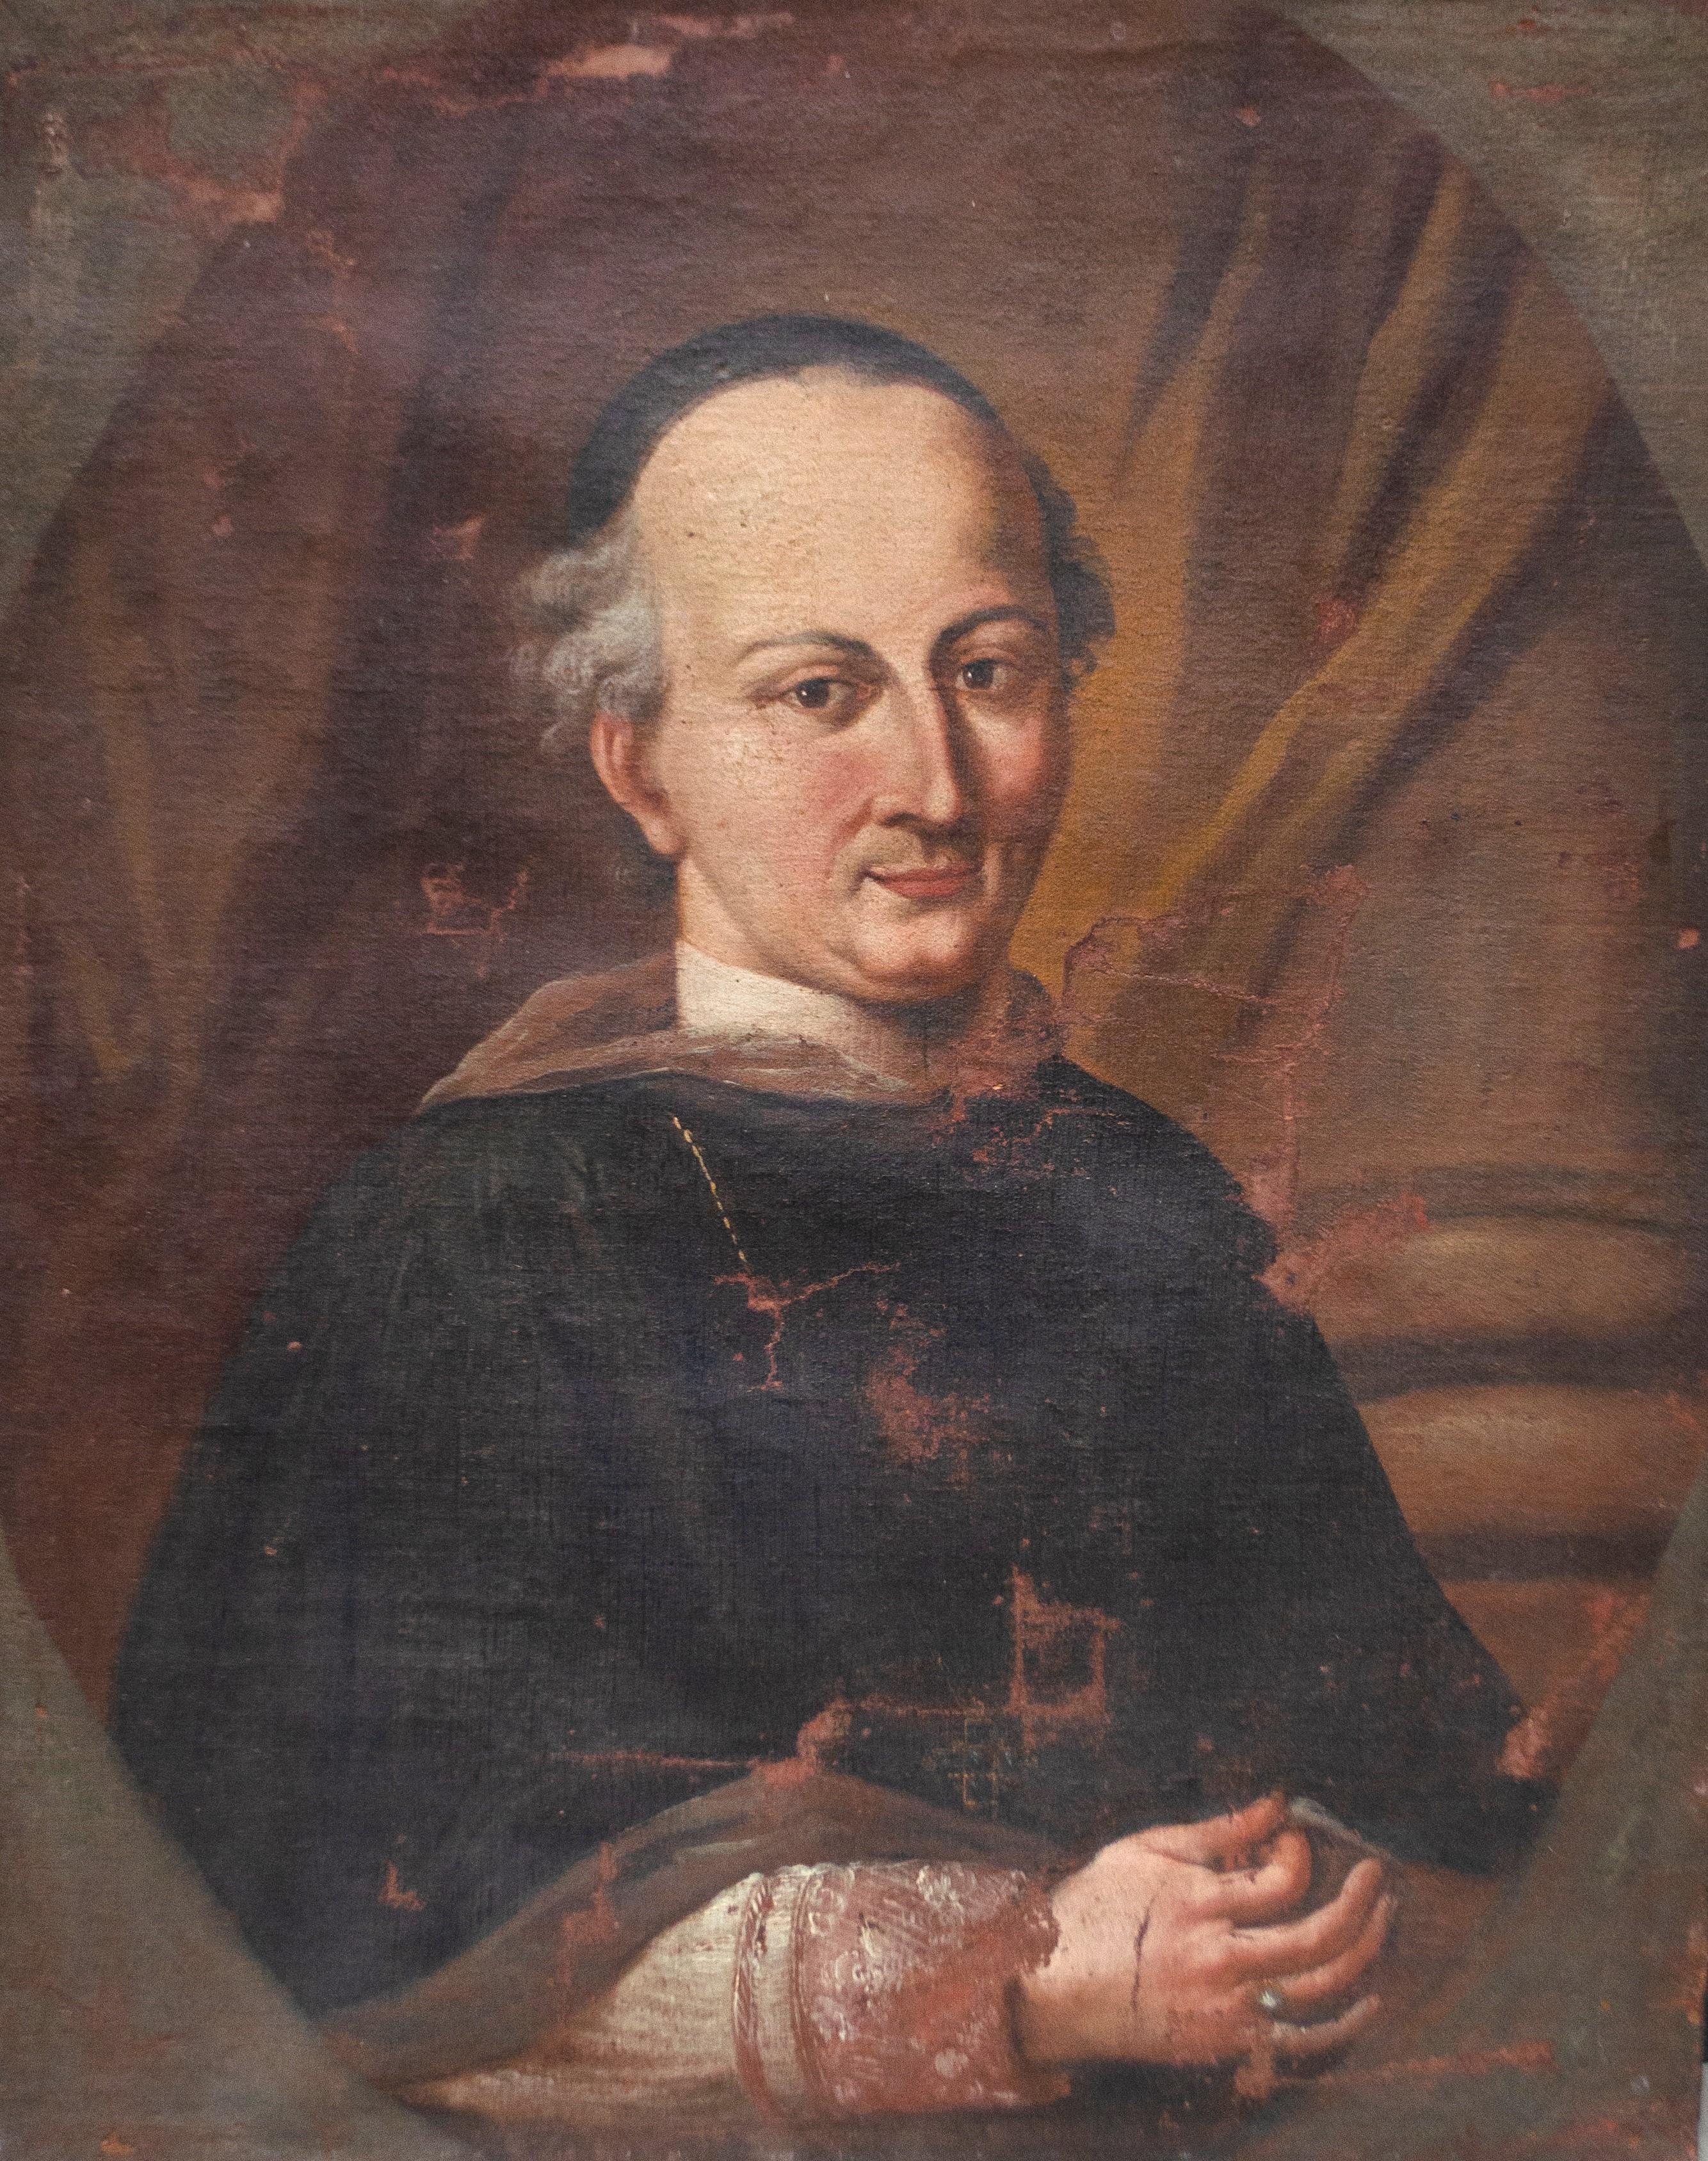 Portrait de l'évêque de Vérone Giovanni Morosini (1719 - 1789), école italienne.

Technique : peinture à l'huile sur toile, toile relinée.

Fin du XVIIIe siècle.
Représente un homme d'église.
La figure de Monseigneur Giovanni Morosini est